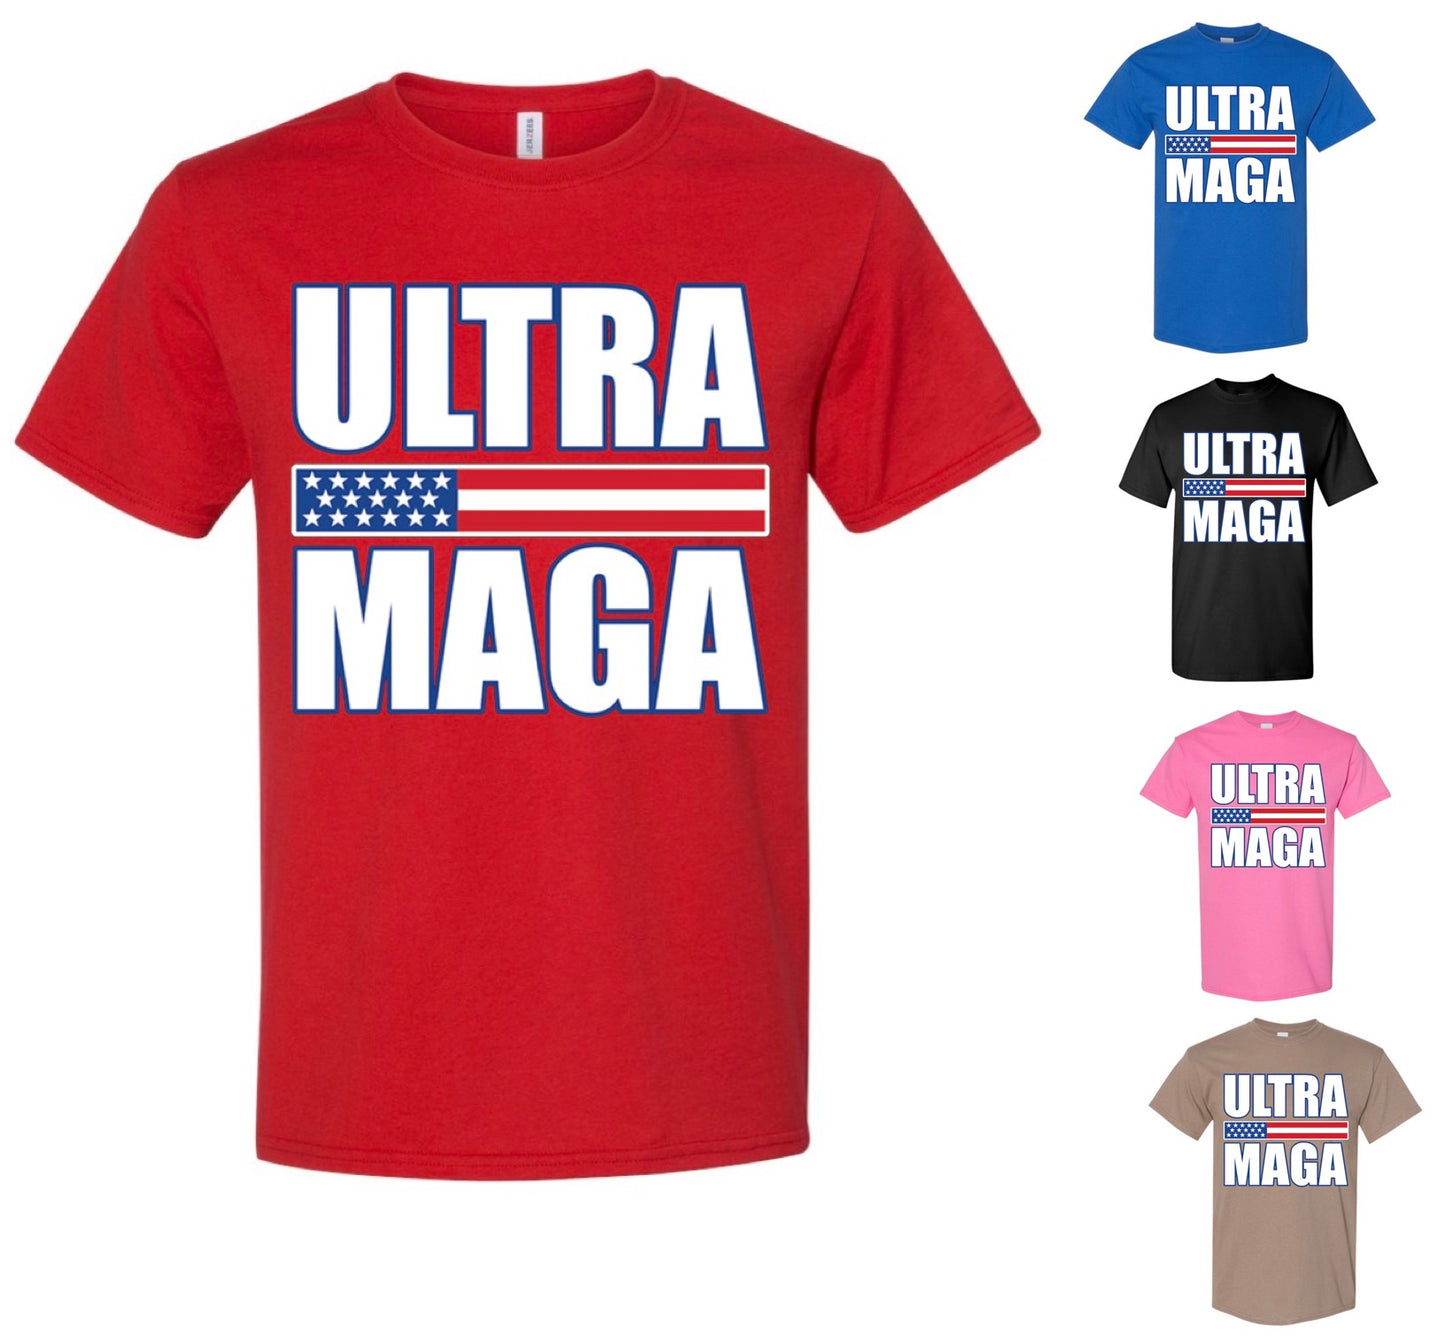 Ultra MAGA T-Shirt — Just Pay Shipping